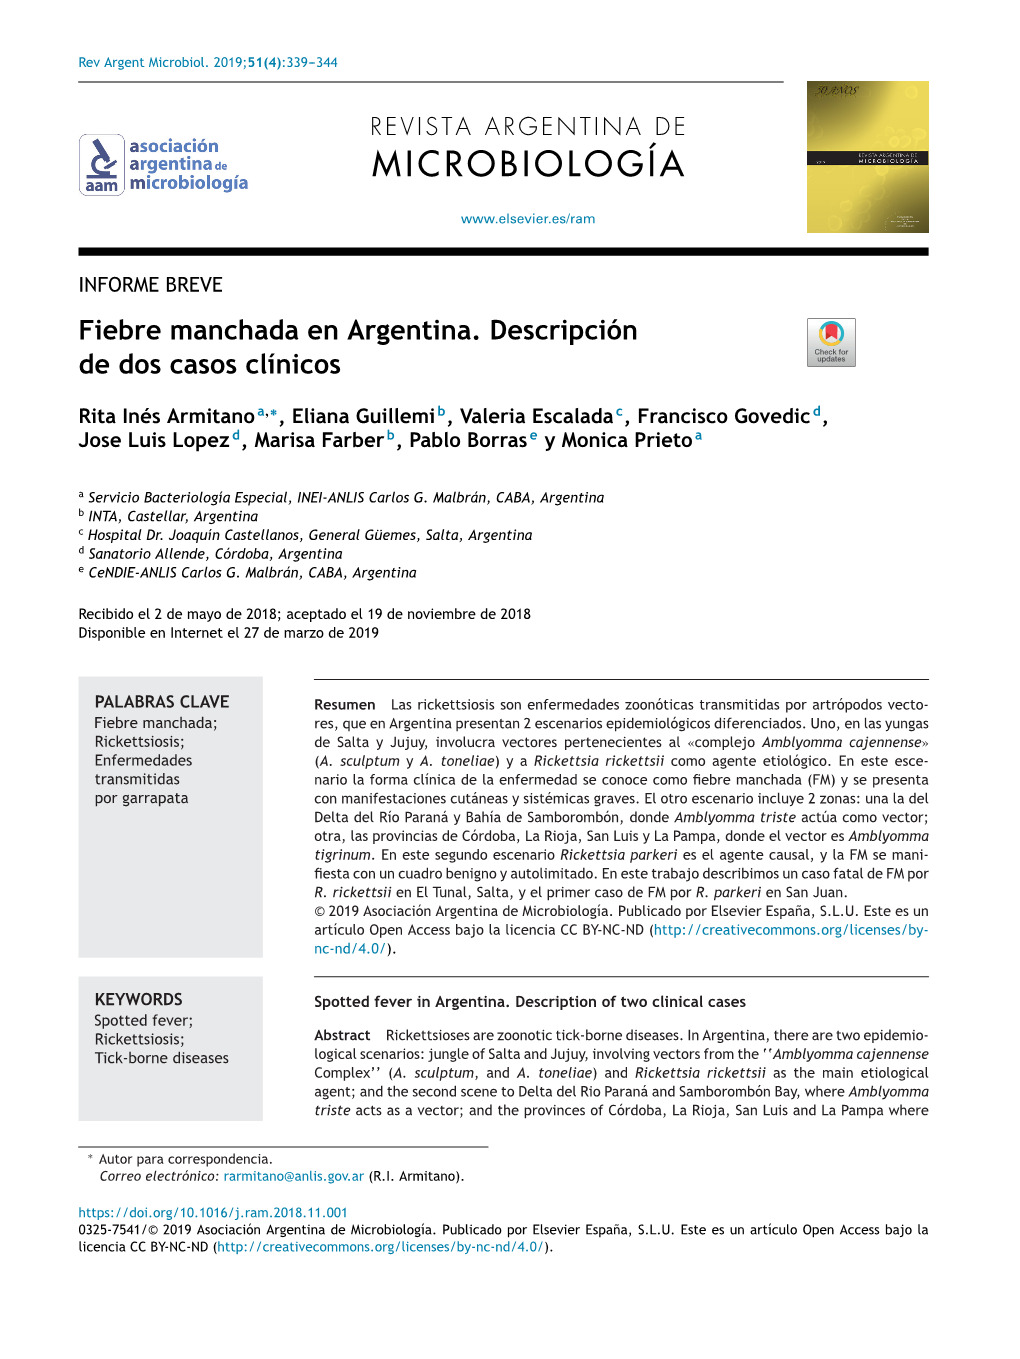 Fiebre Manchada En Argentina. Descripción De Dos Casos Clínicos 341